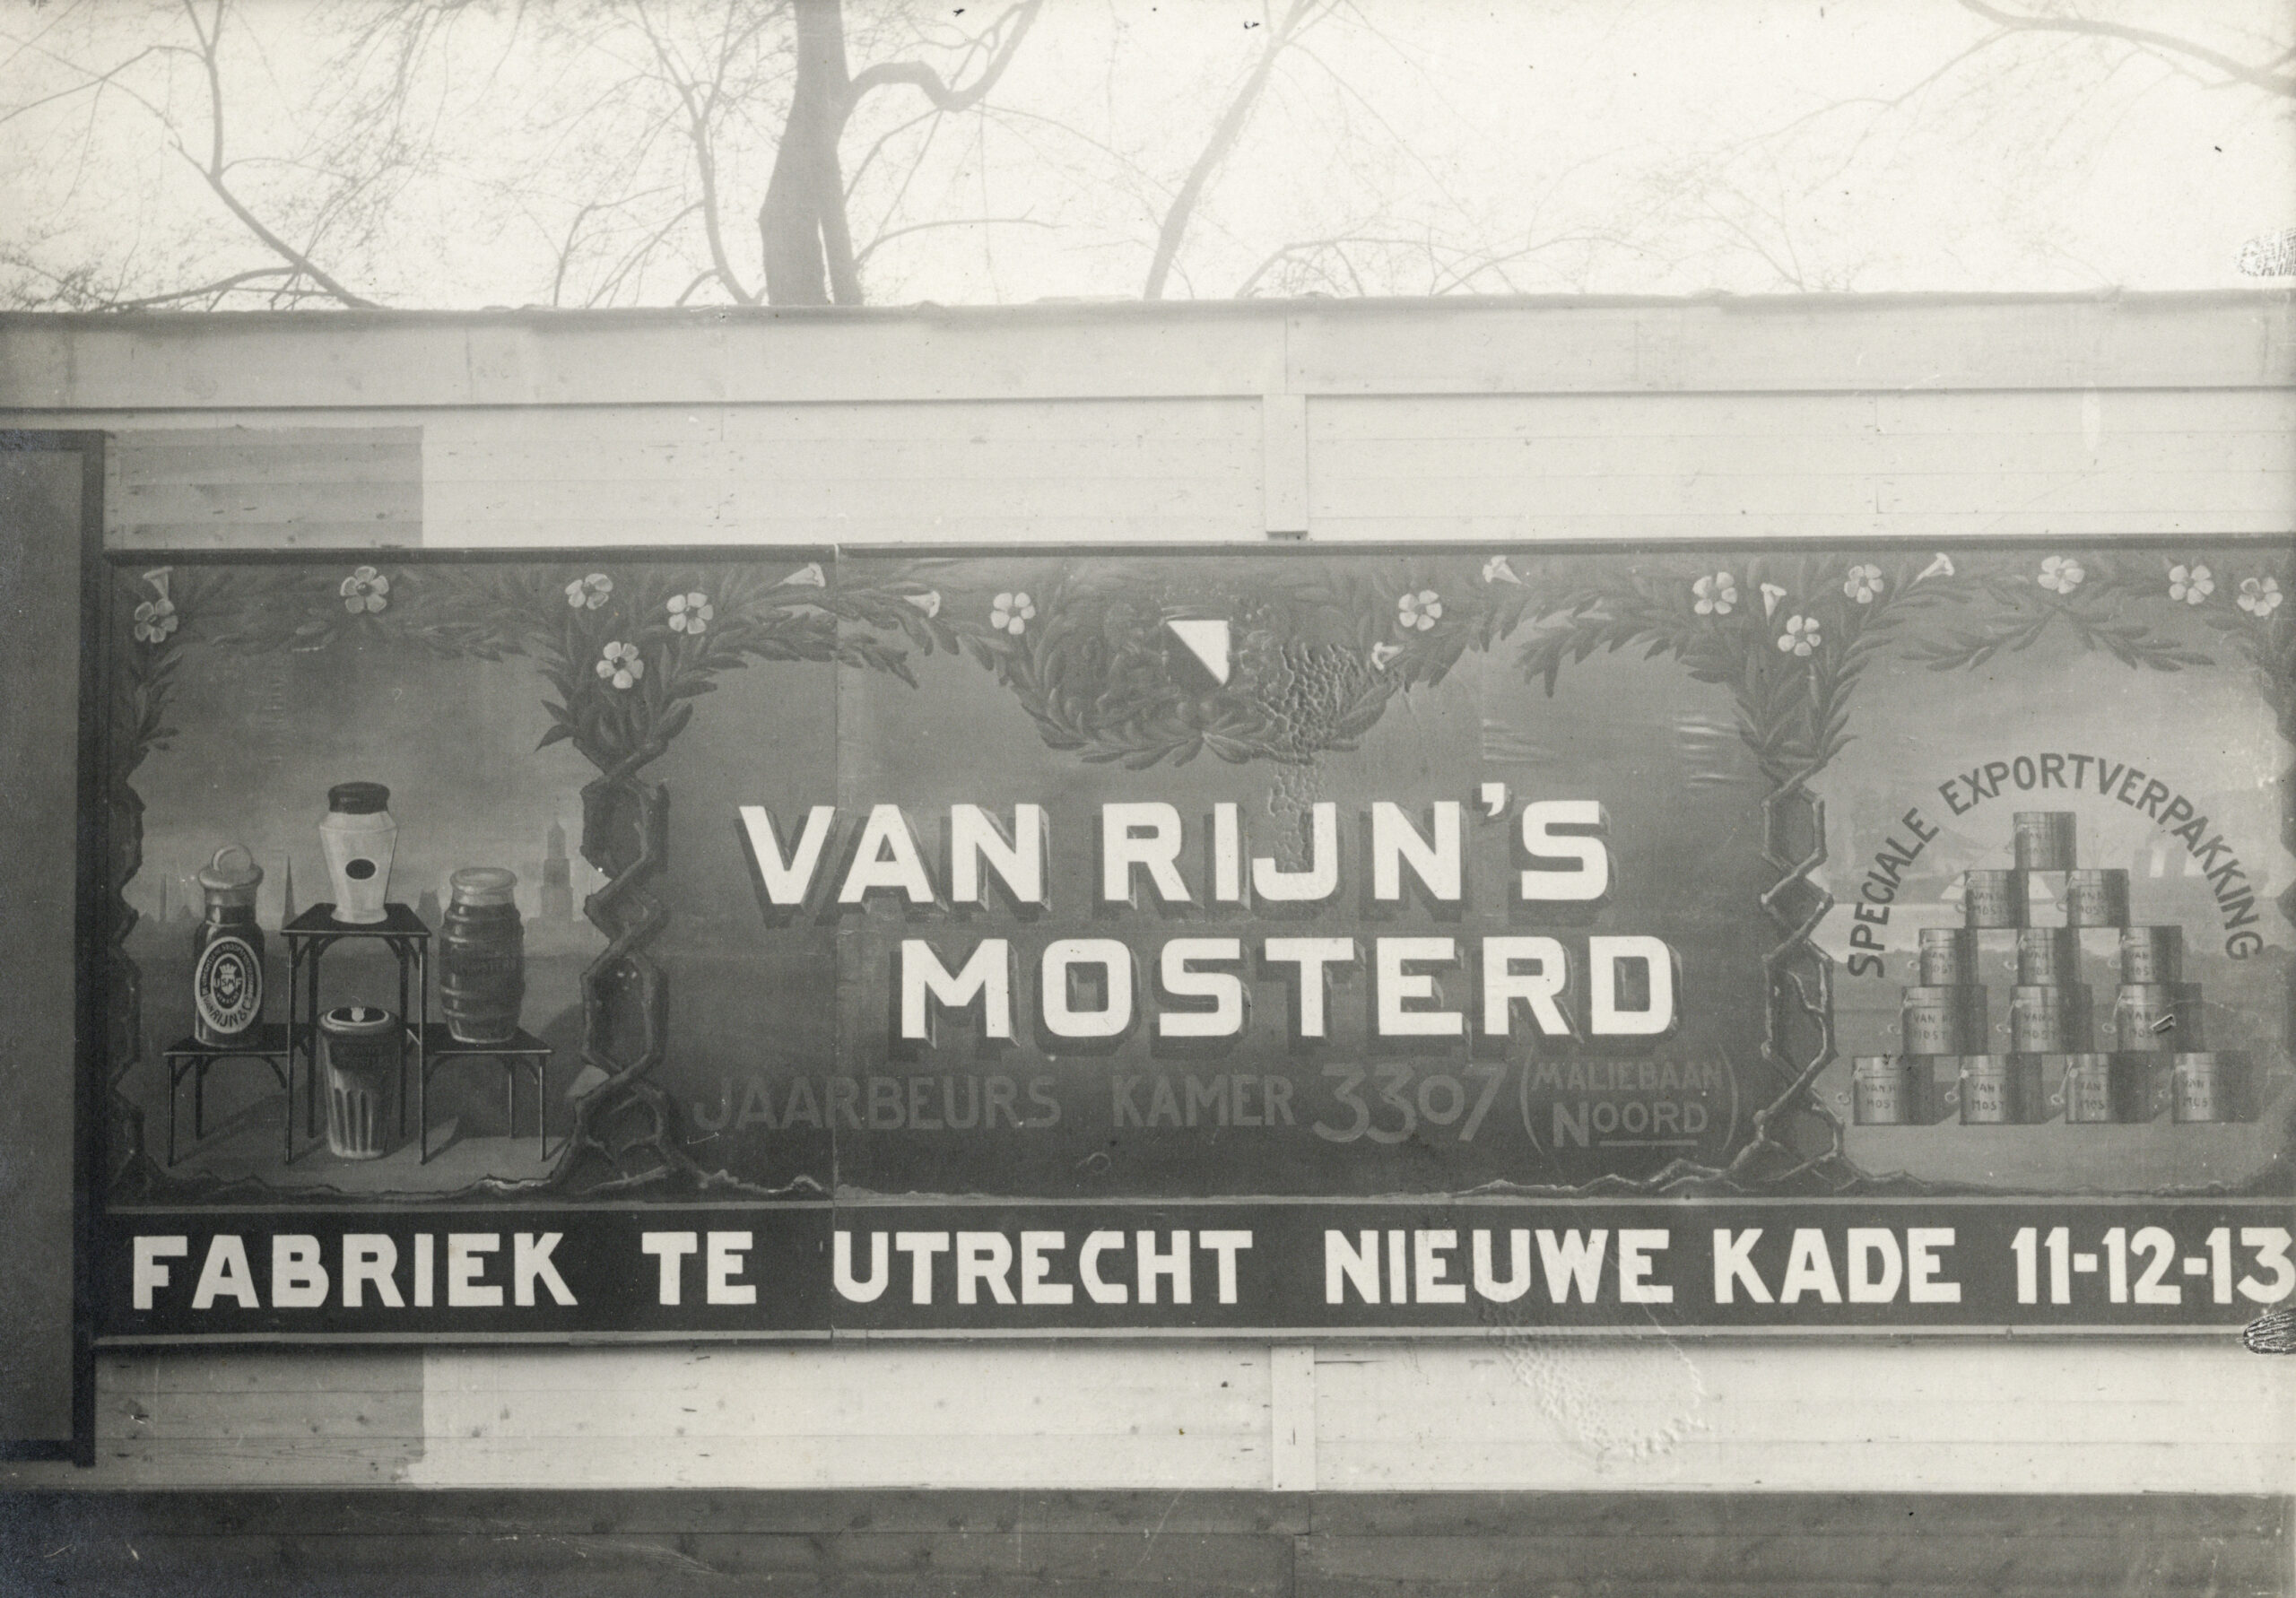 Een reclame van Van Rijn’s Mosterdfabrieken